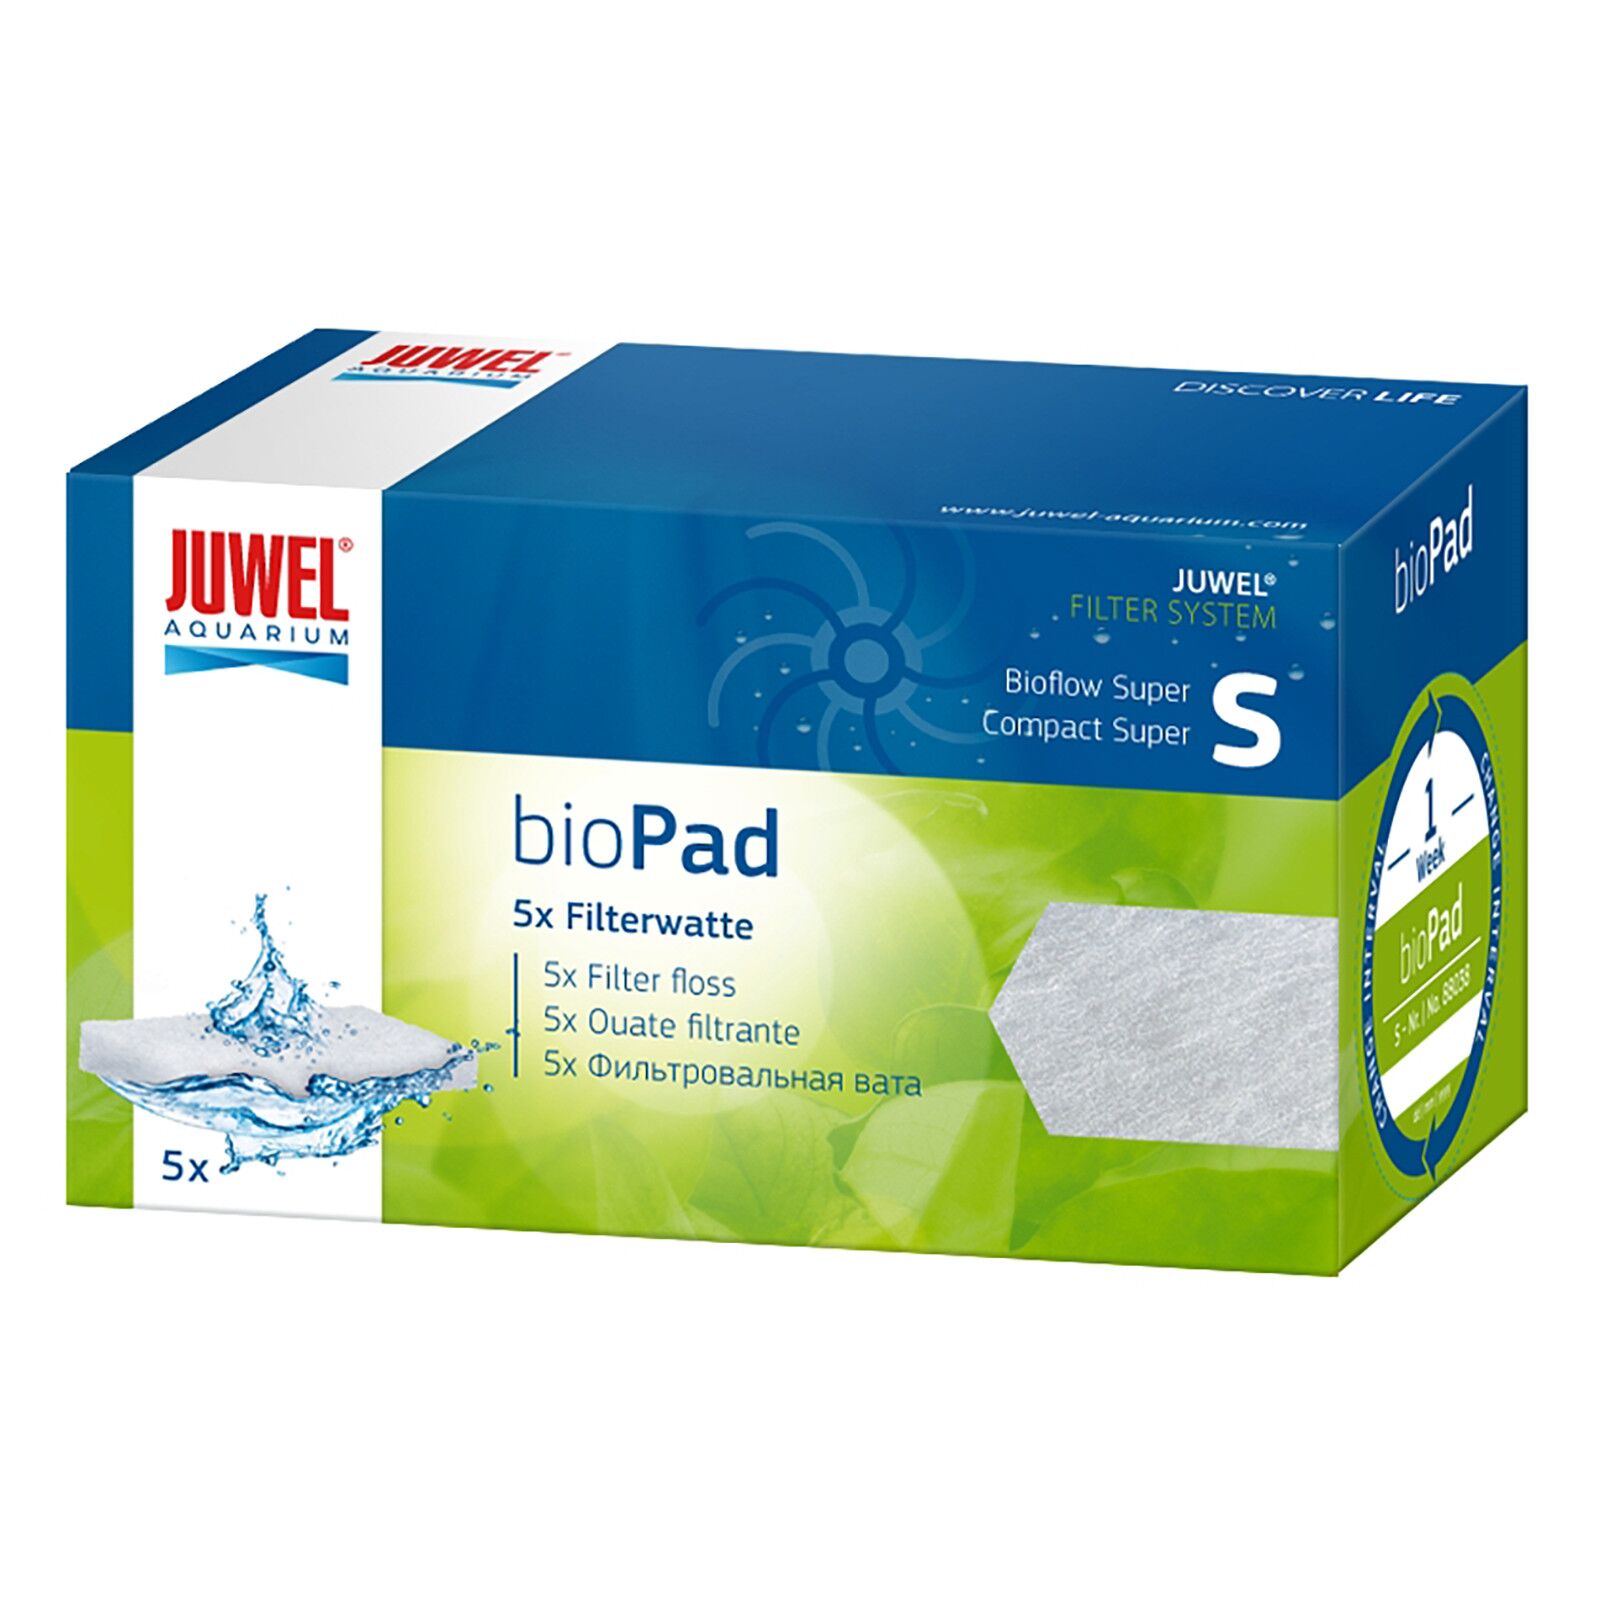 Juwel - bioPad Filterwatte